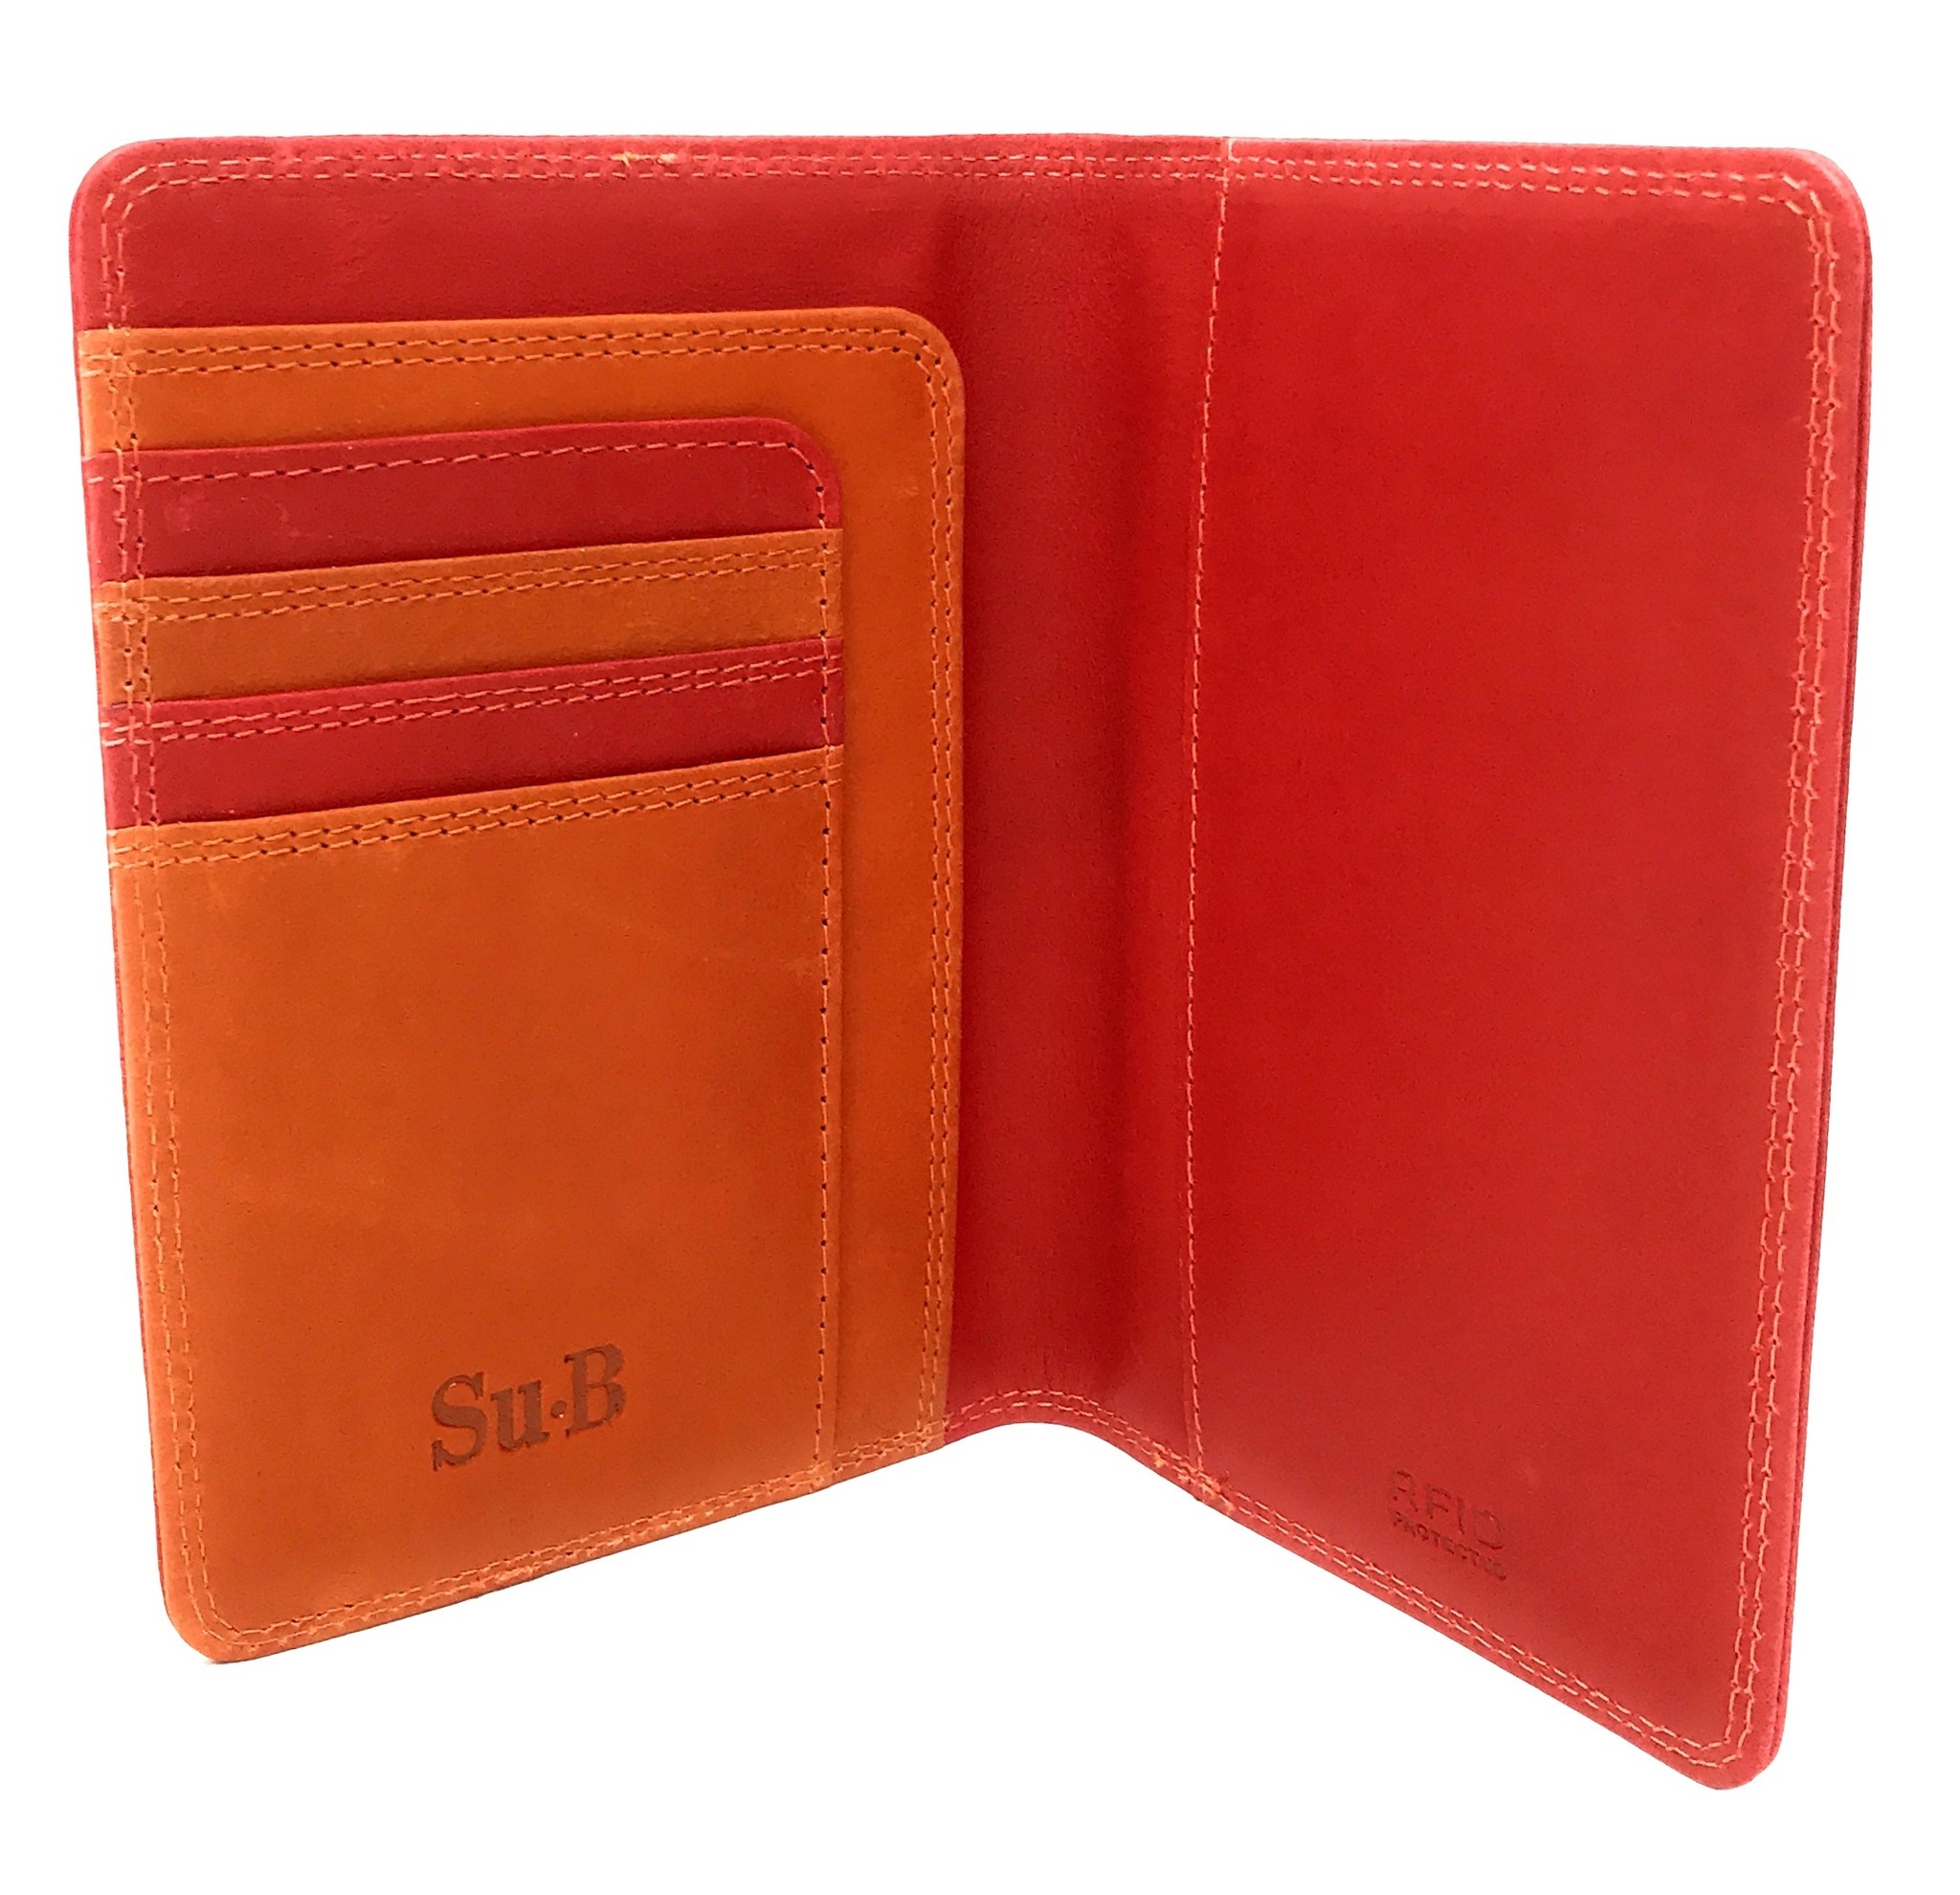 Venlo Travel RFID Passport Holder Red-Orange-4